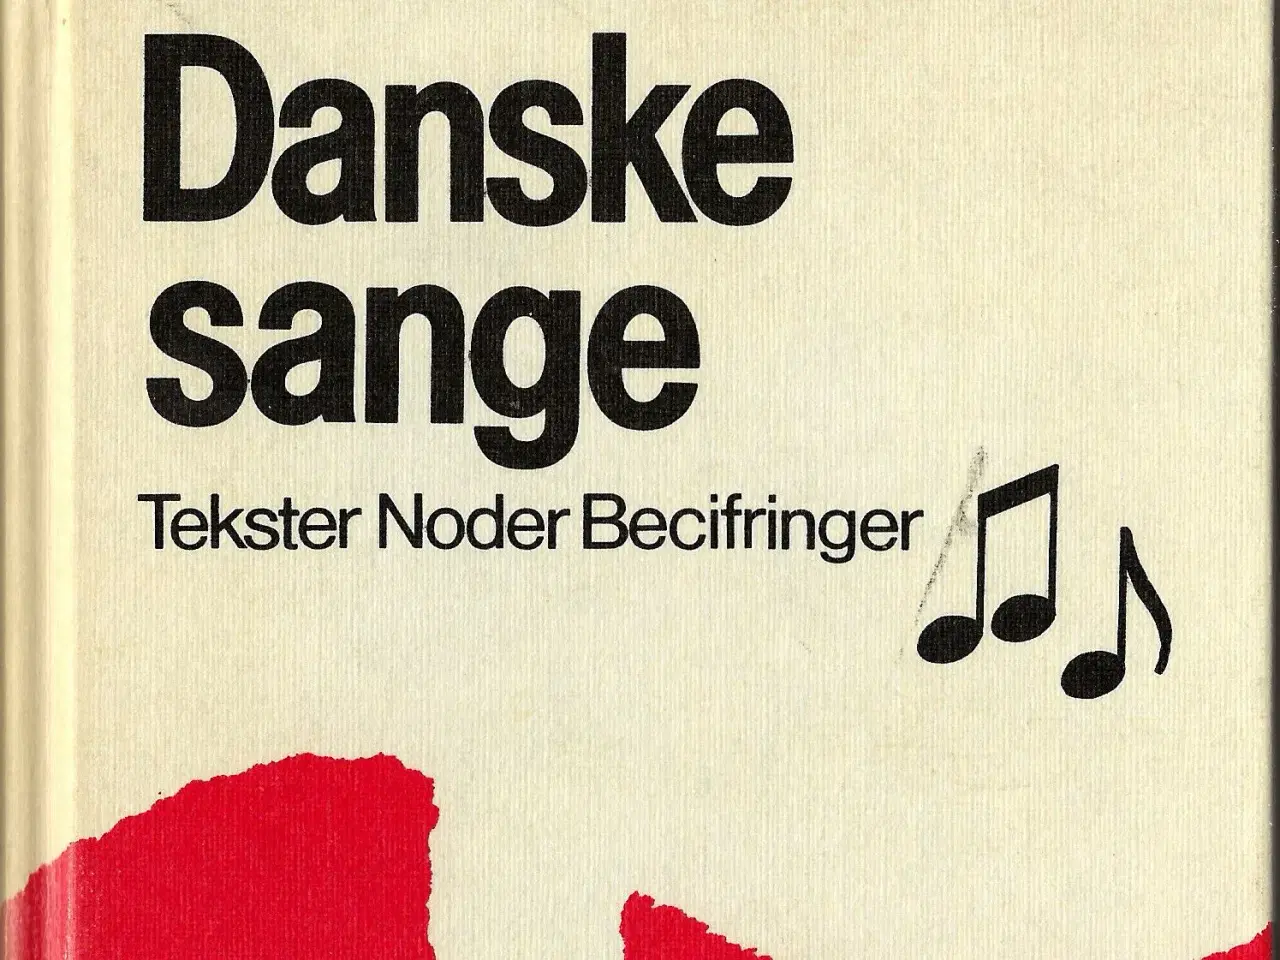 Billede 1 - Danske sange. Tekster, noder, becifringer